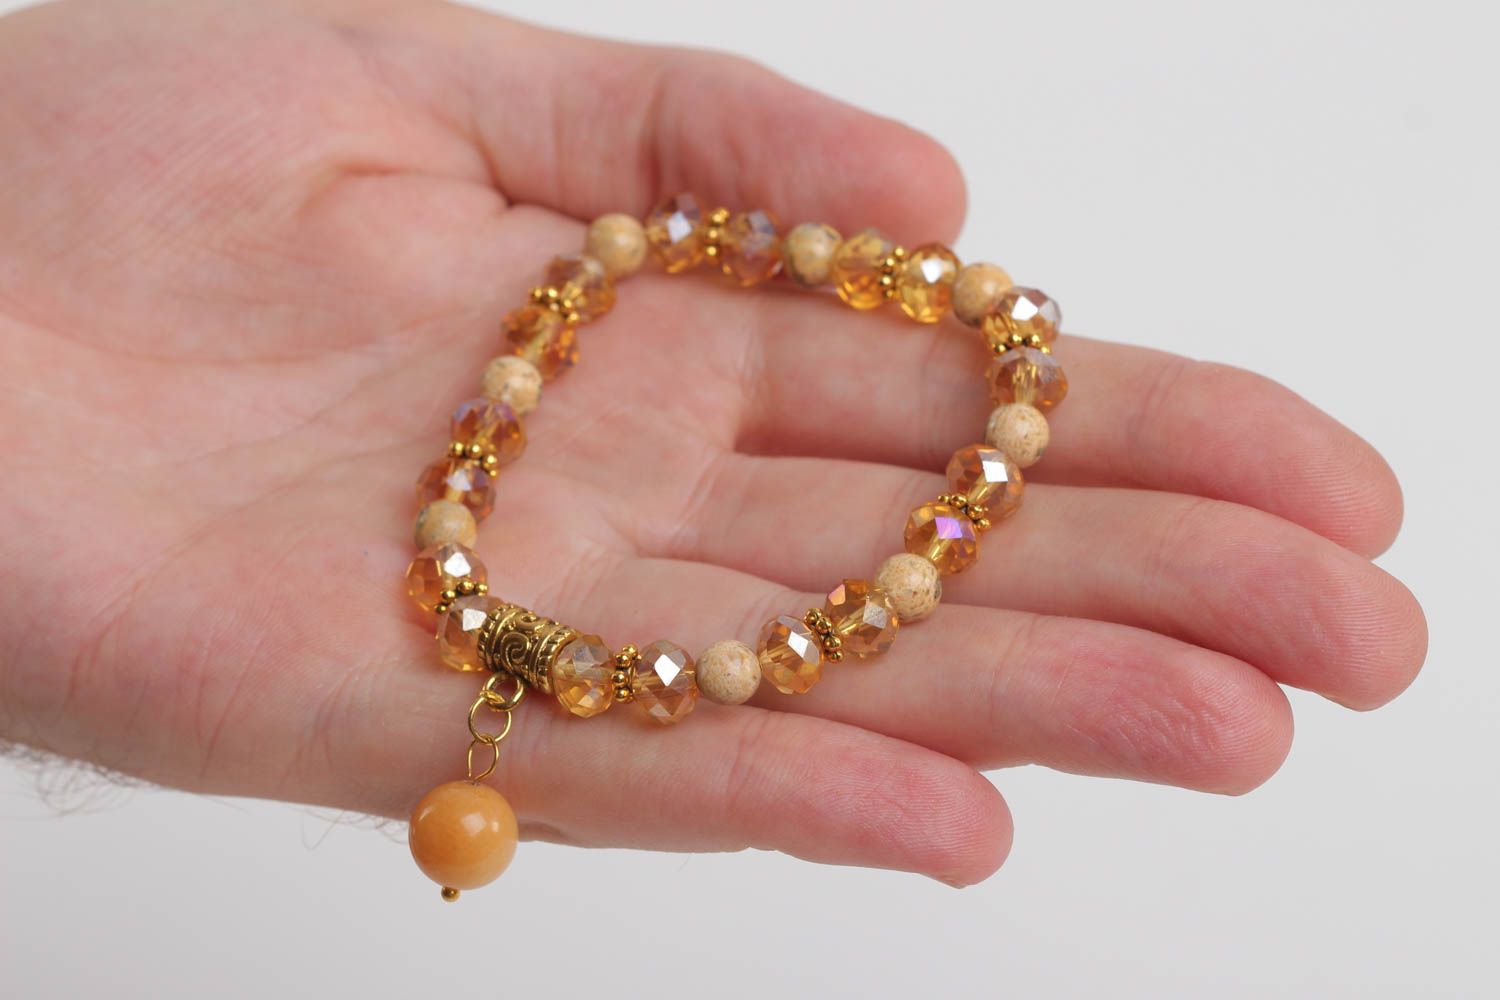 Stone beige beads' charm tennis bracelet for teen girl photo 5